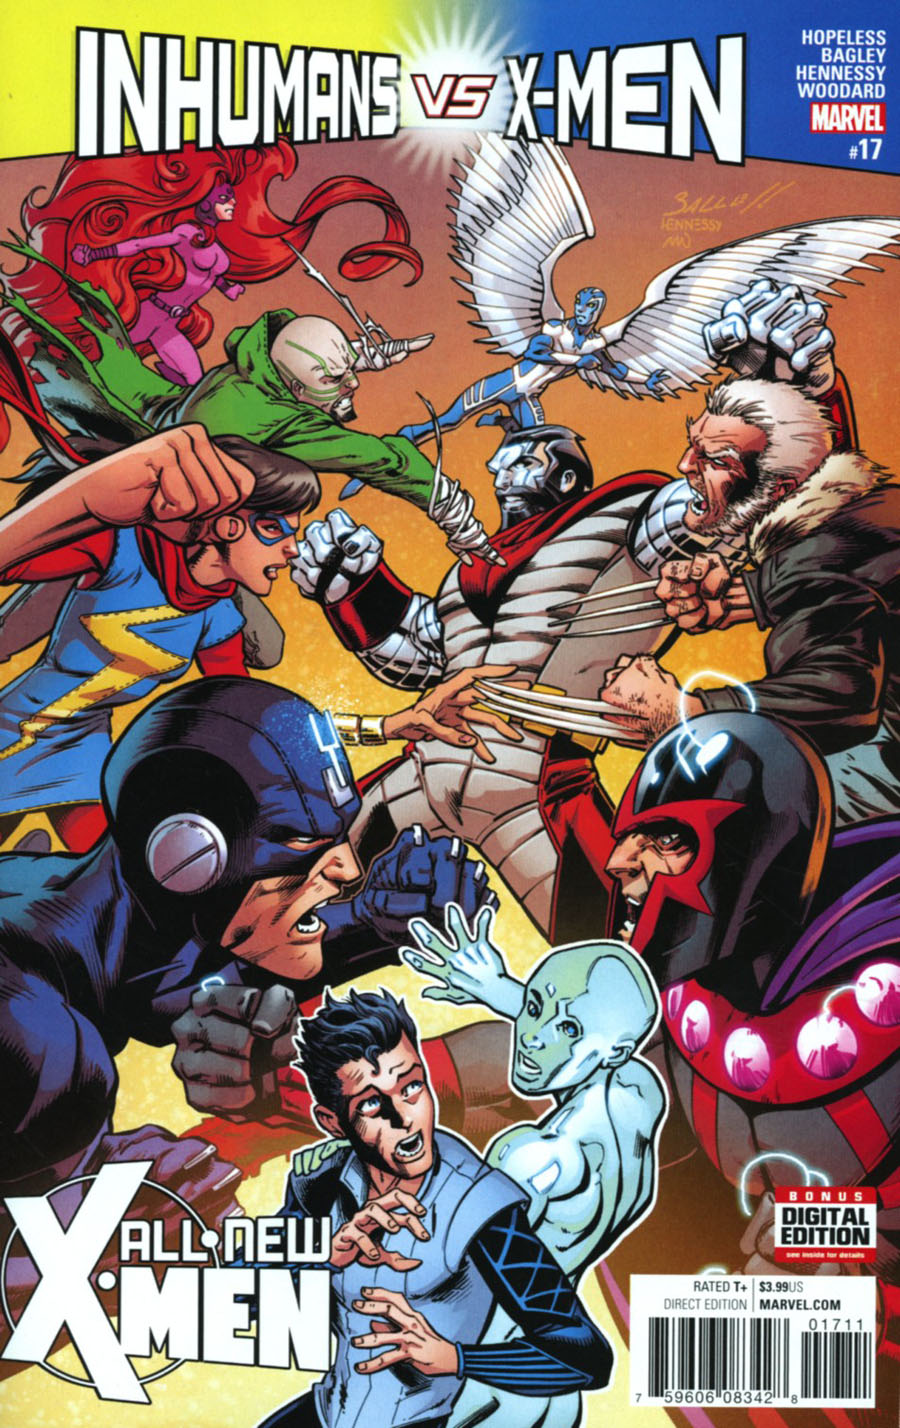 All-New X-Men Vol 2 #17 Cover A Regular Mark Bagley Cover (Inhumans vs X-Men Tie-In)